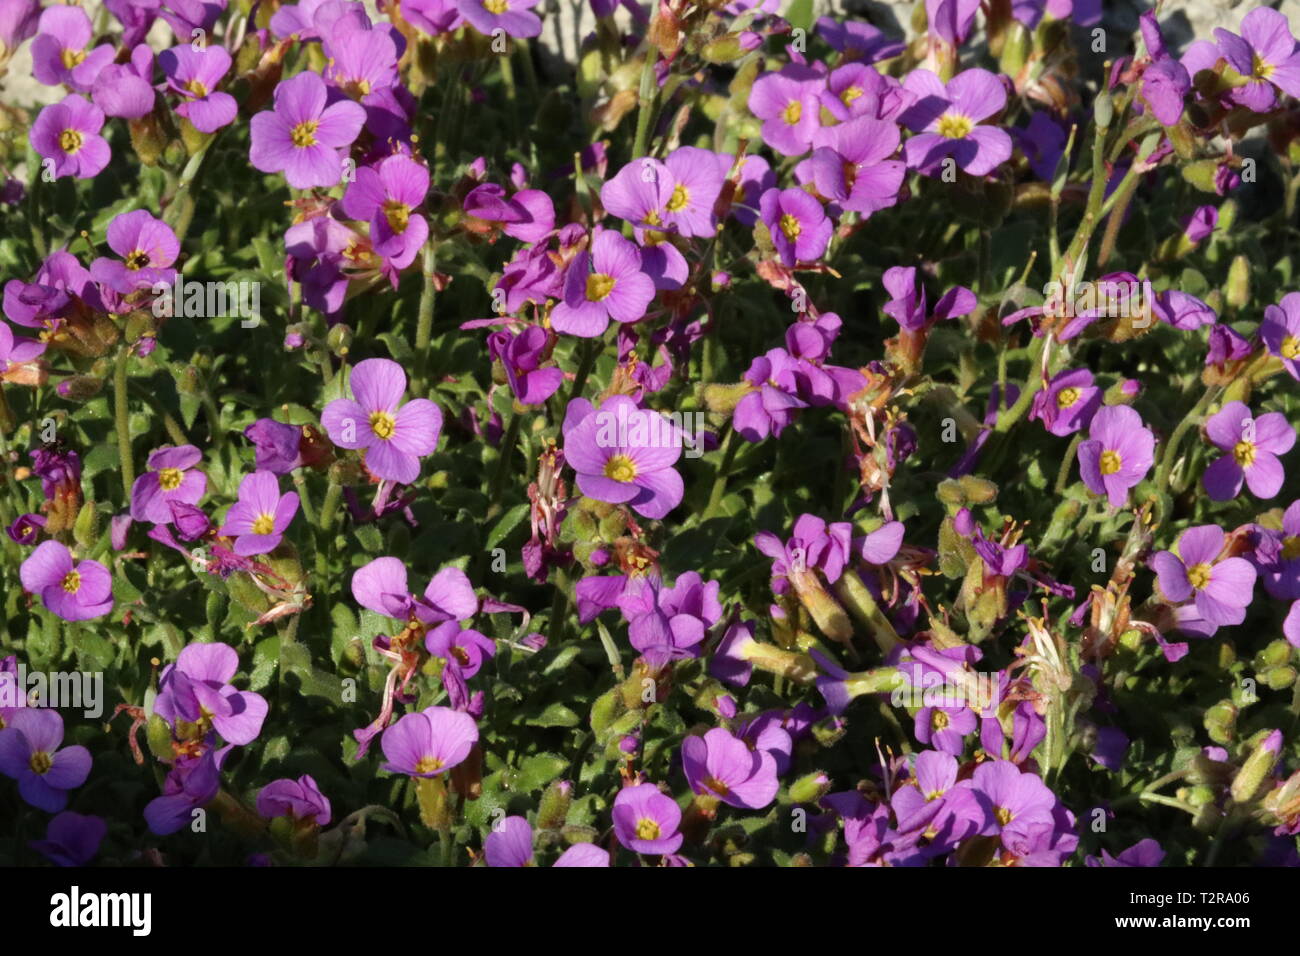 purple aubretia groundcover flower Stock Photo